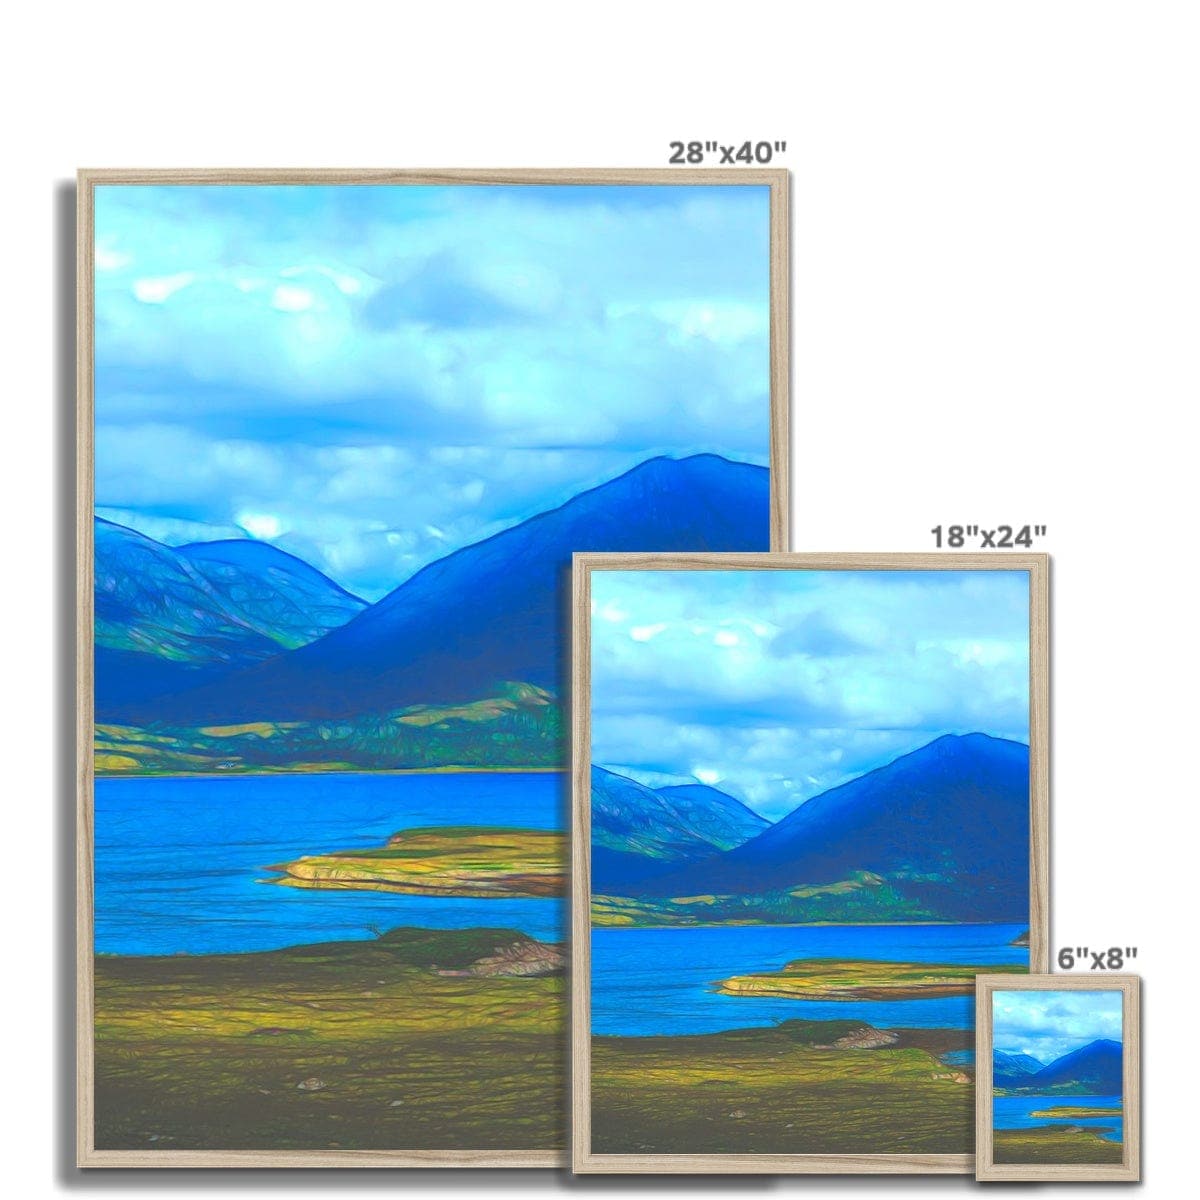 Lake in the Highlands of Scottland,  Framed Print